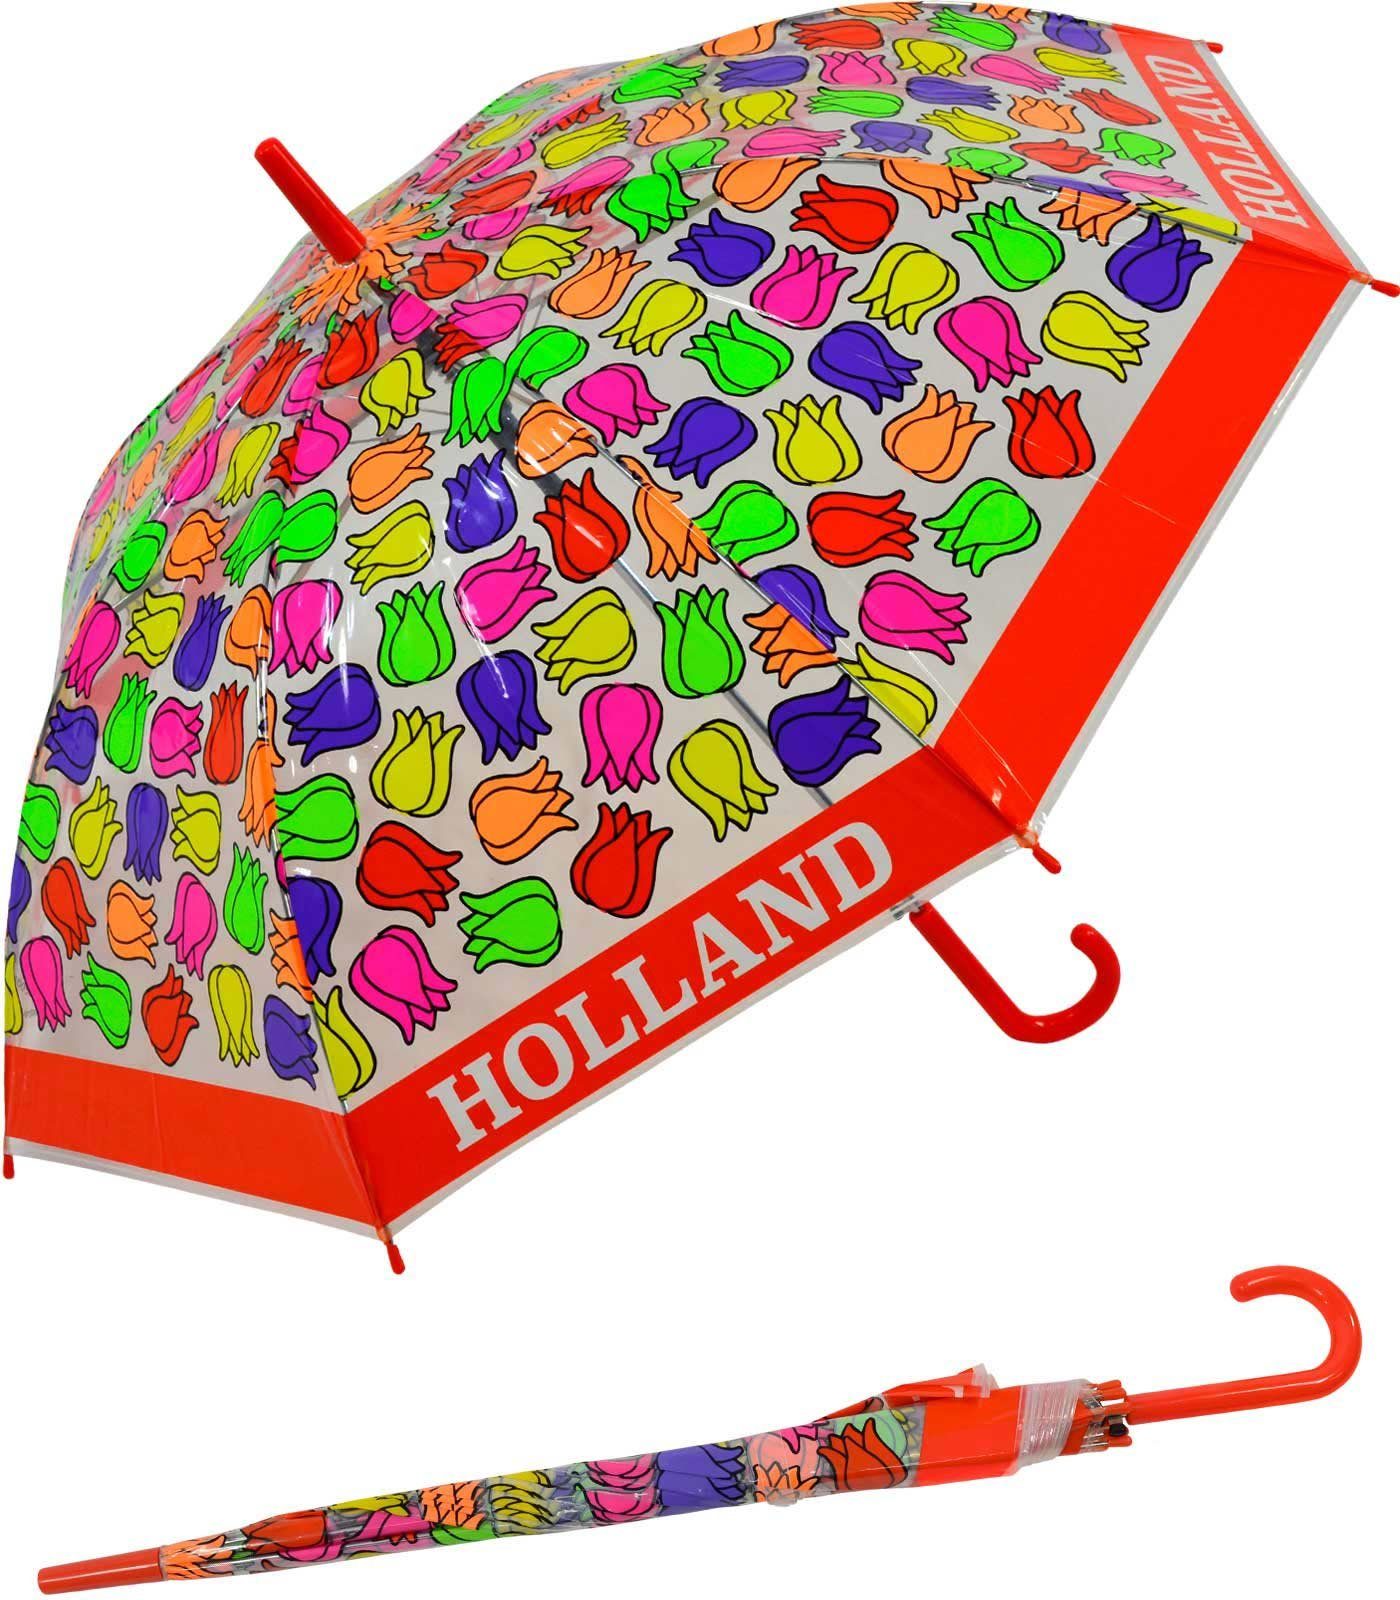 Impliva Langregenschirm Falconetti transparent - Kinderschirm durchsichtig rot bunt Tulpen